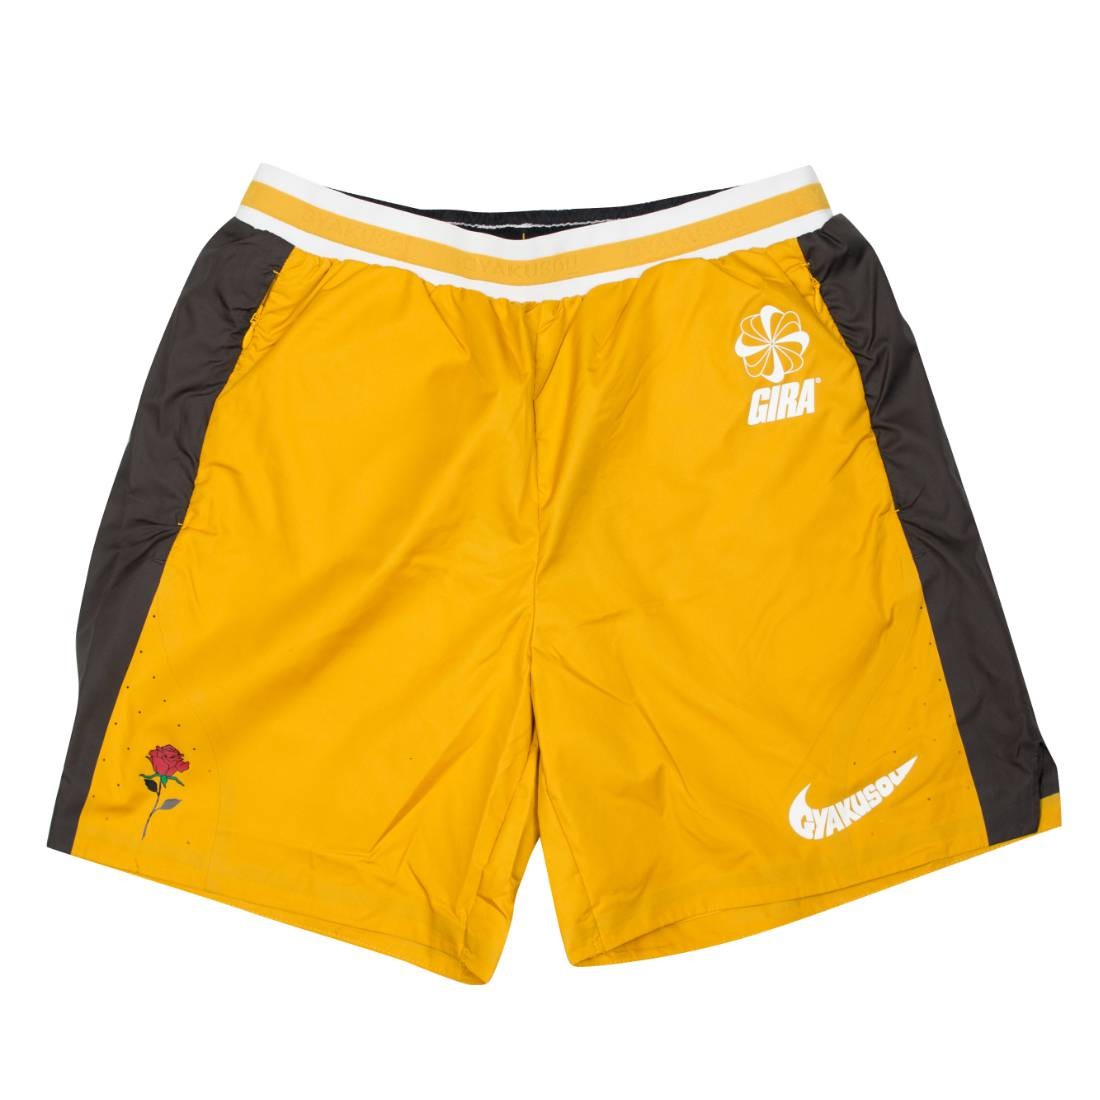 yellow nike mens shorts